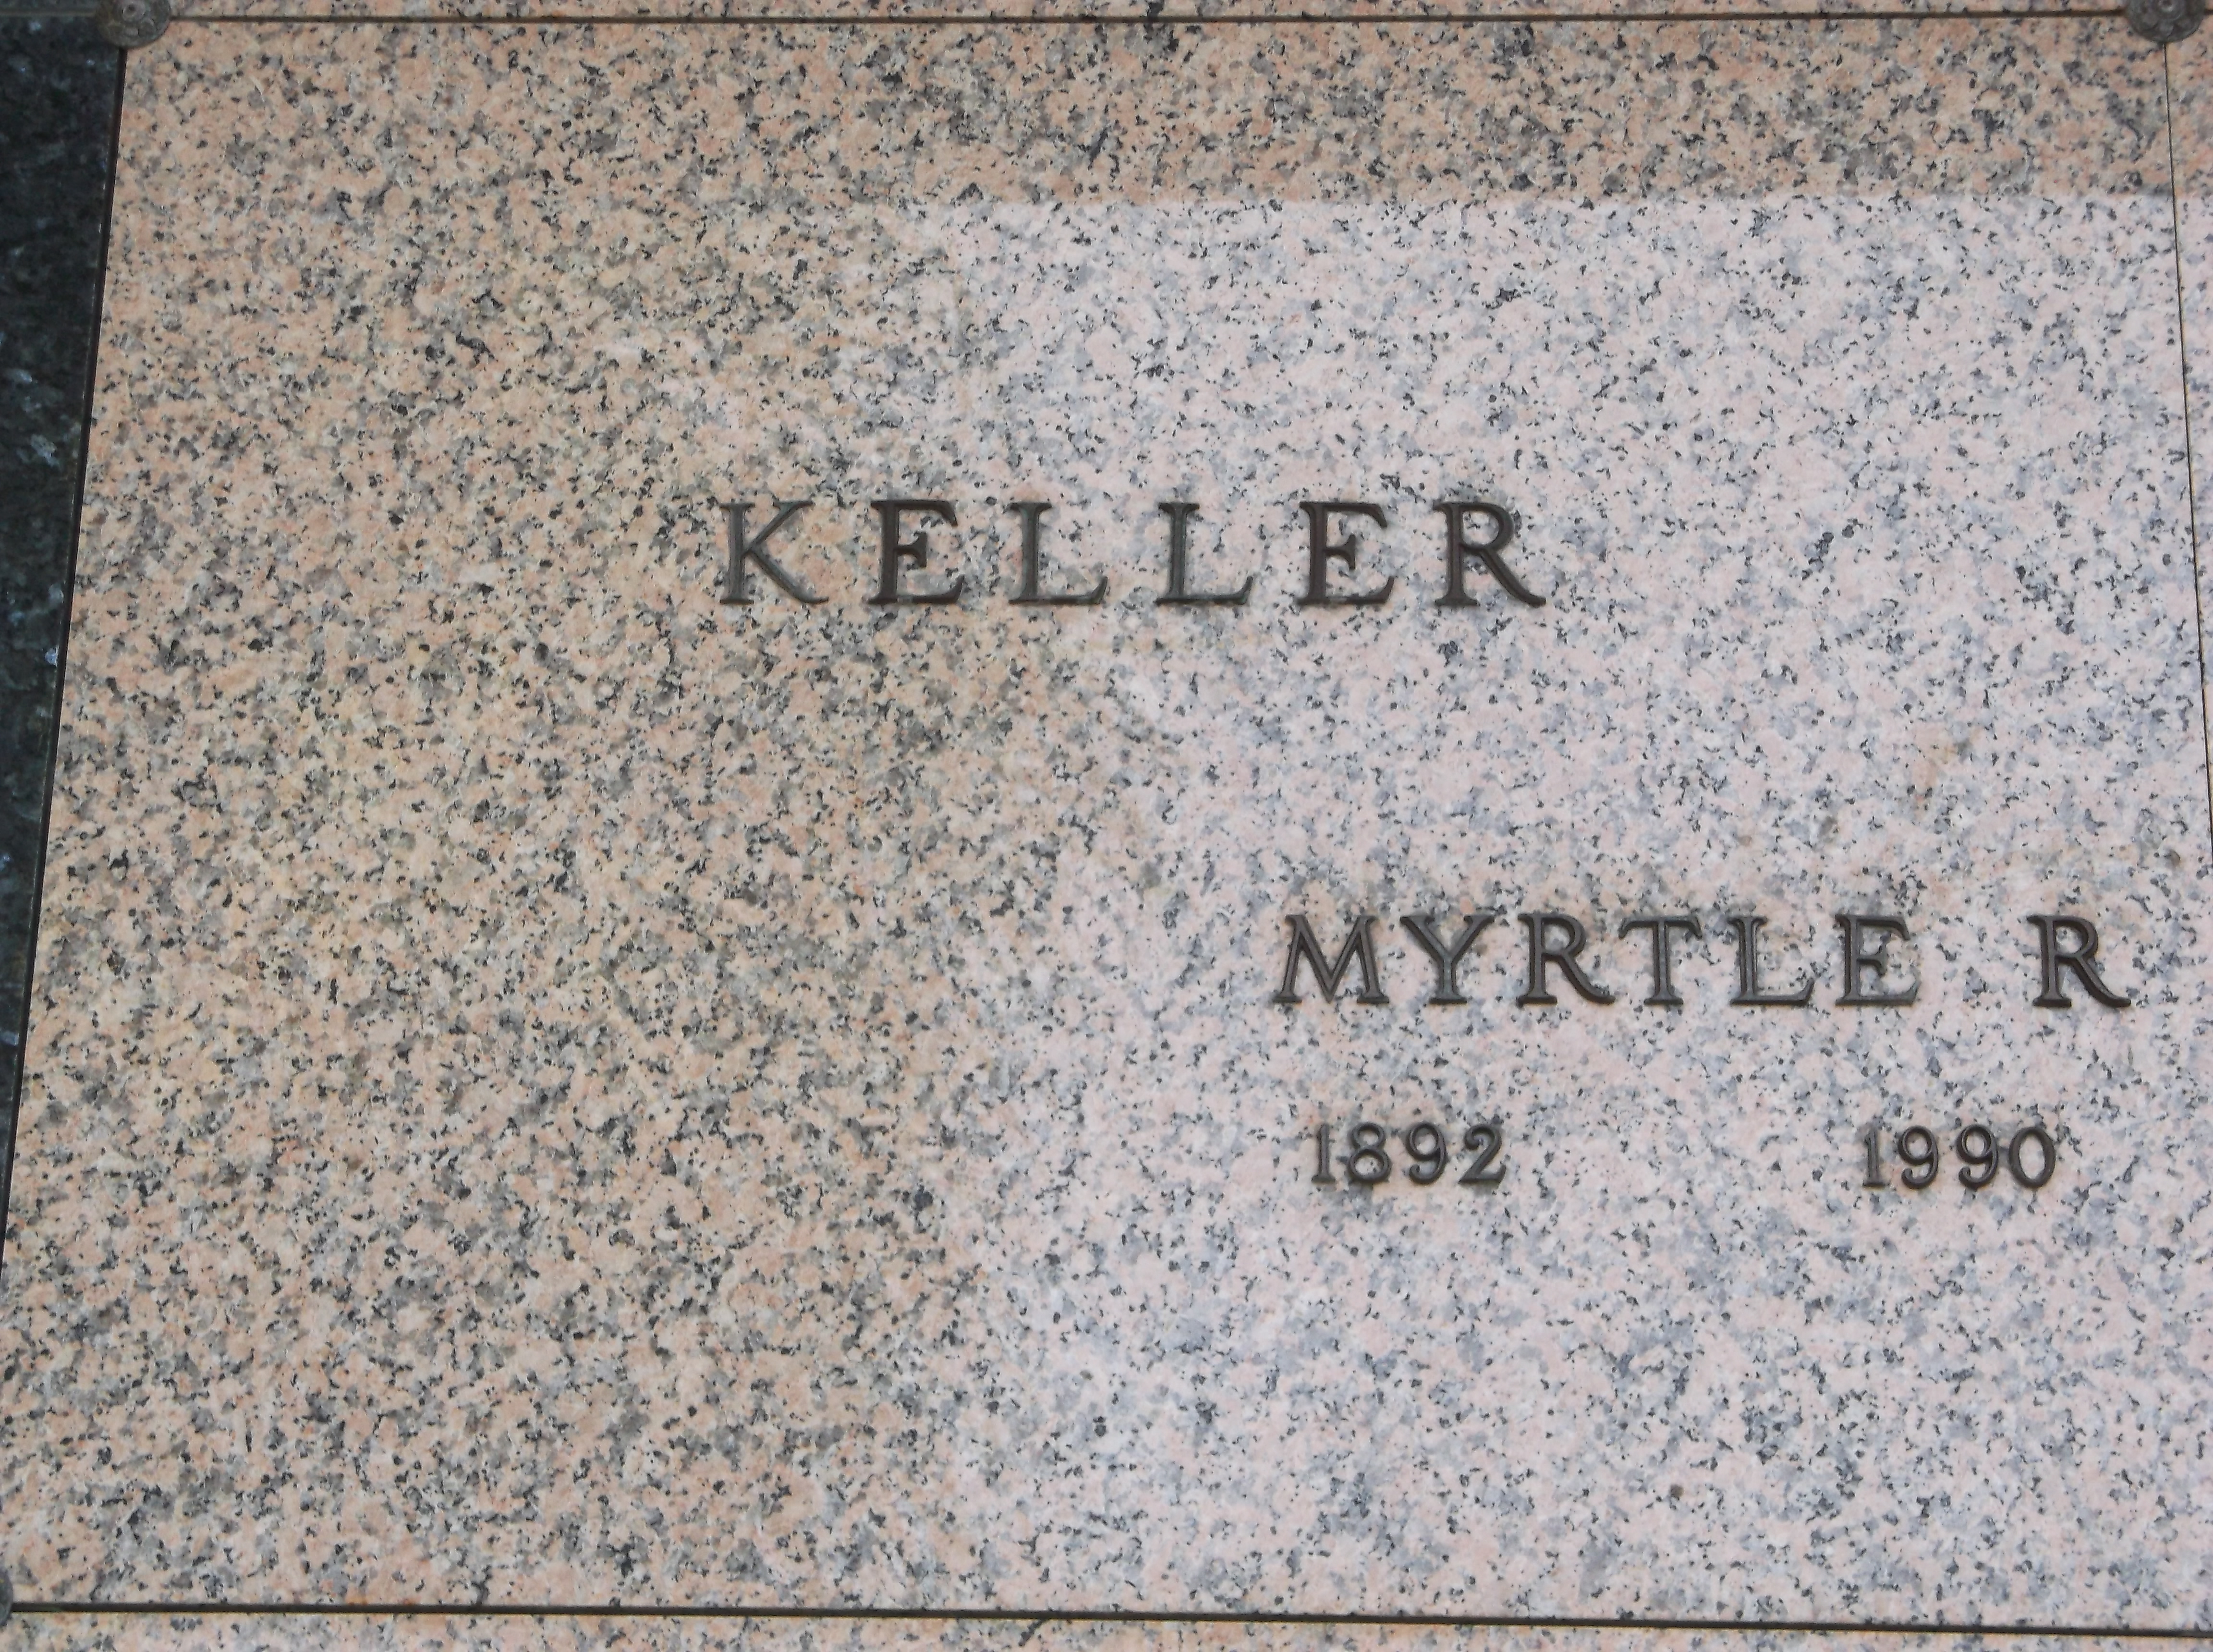 Myrtle R Keller